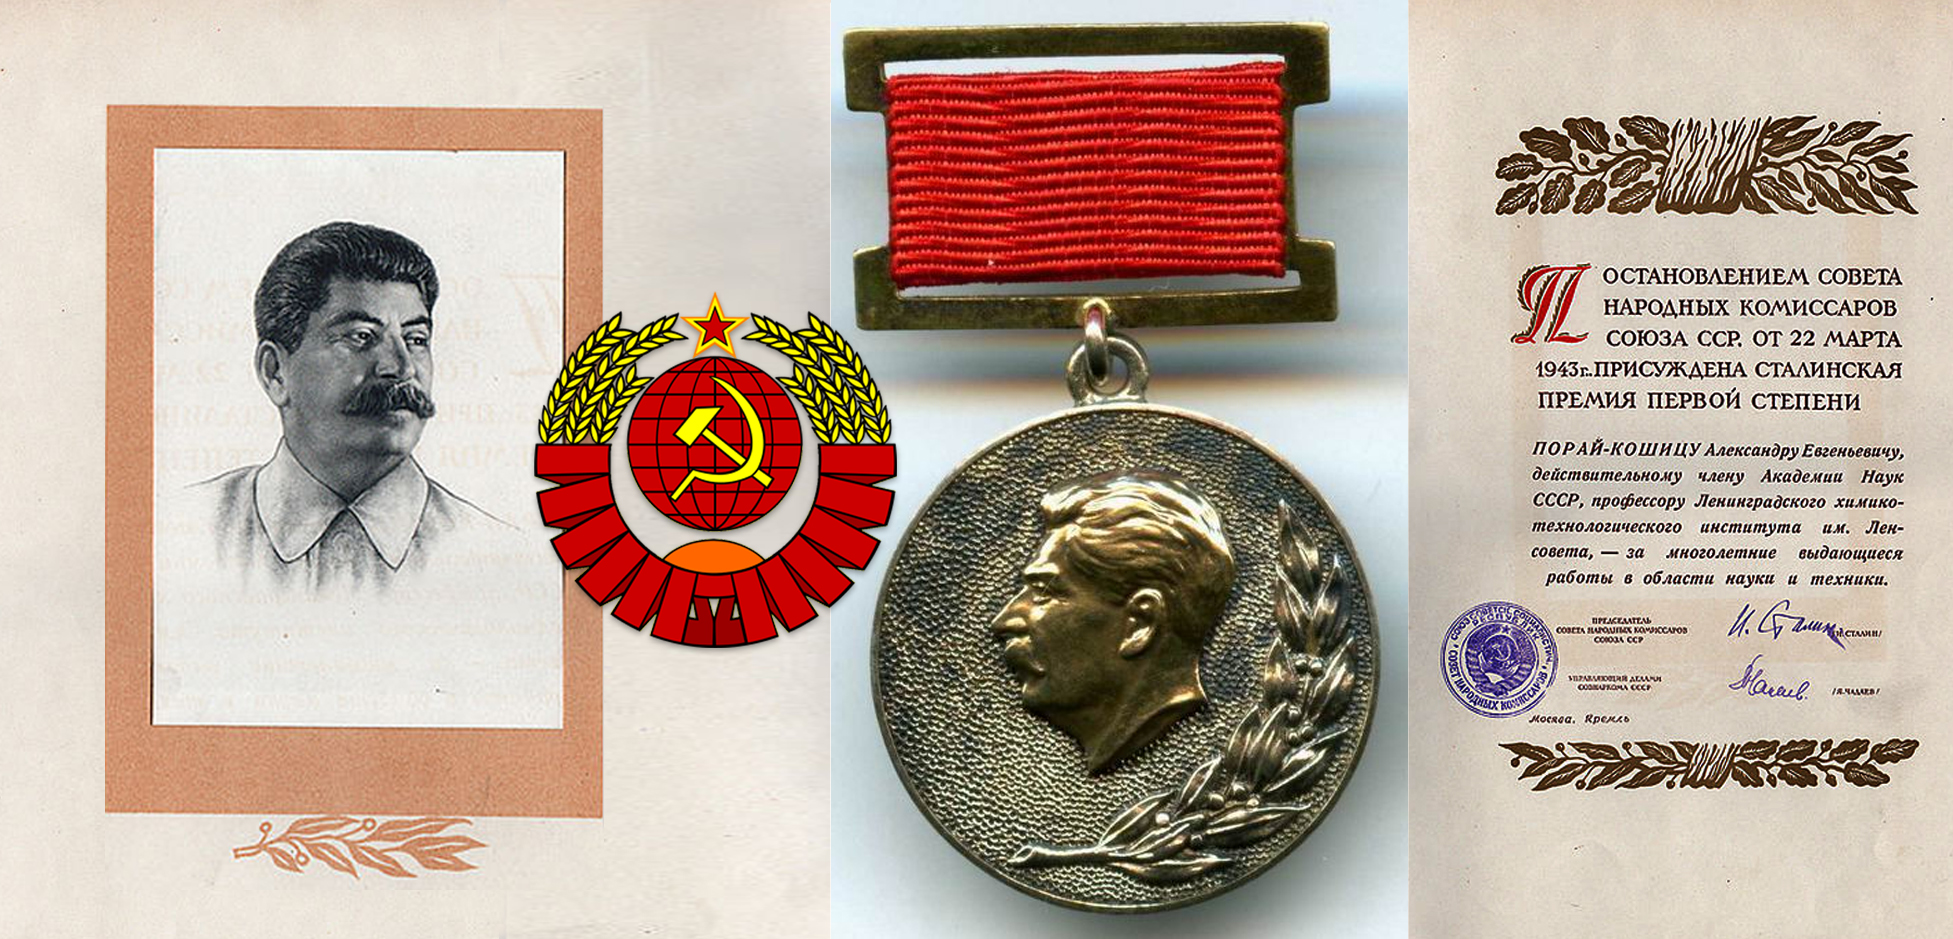 Βραβείο Στάλιν Stalin Prize Ста́линская пре́мия